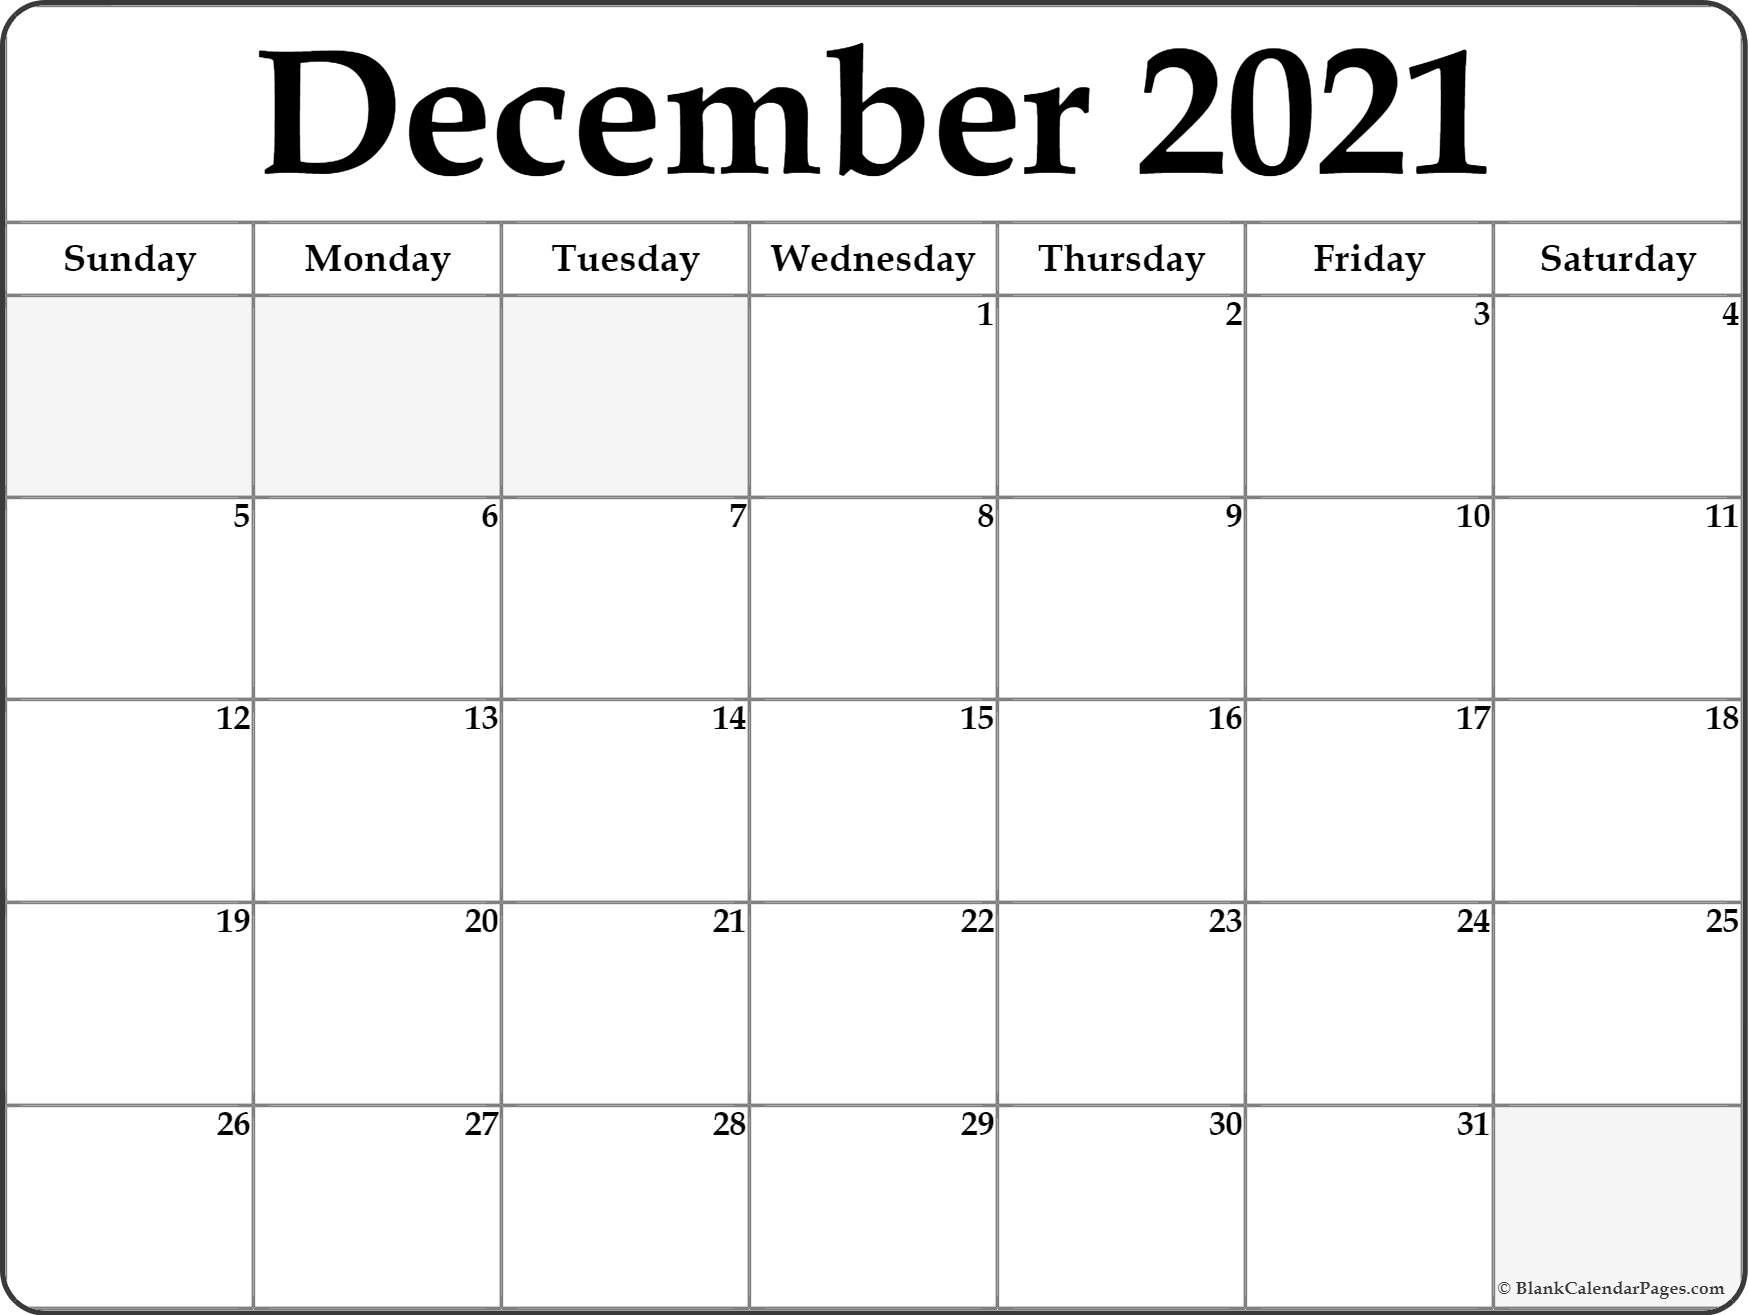 Collect Free Printable Blank Calendar November 2021